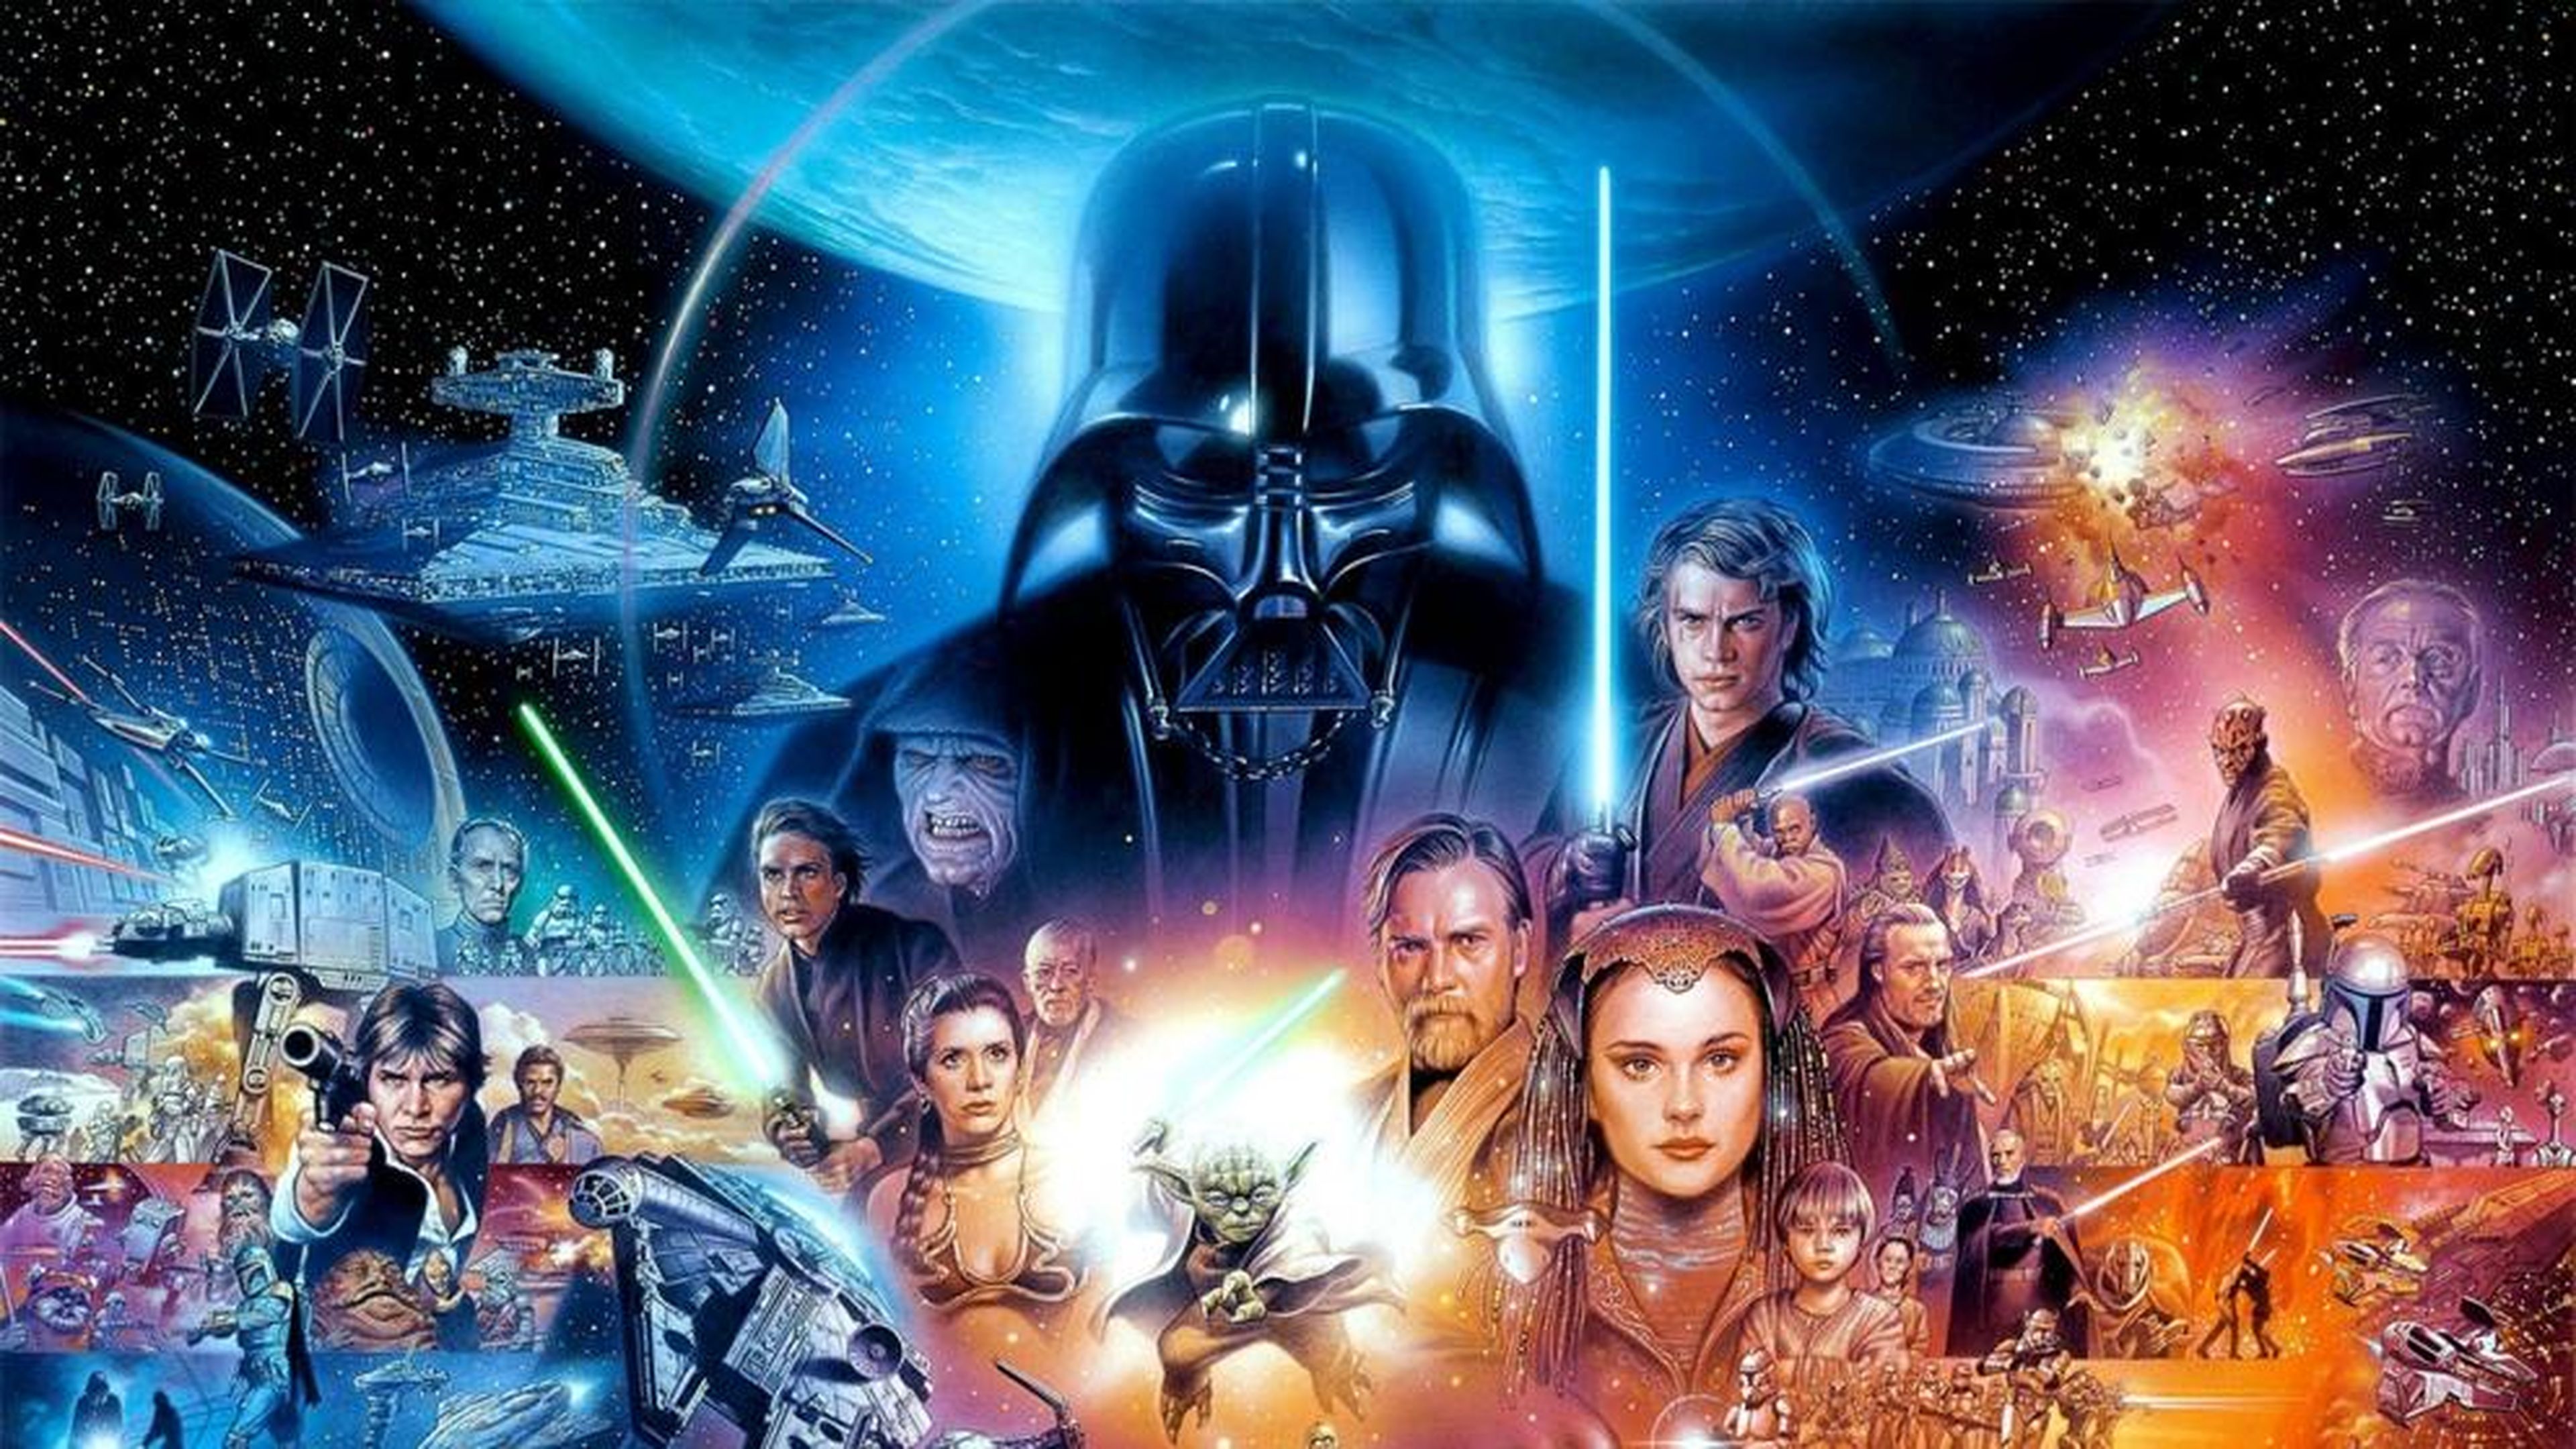 Regalos & Merchandising de Star Wars originales